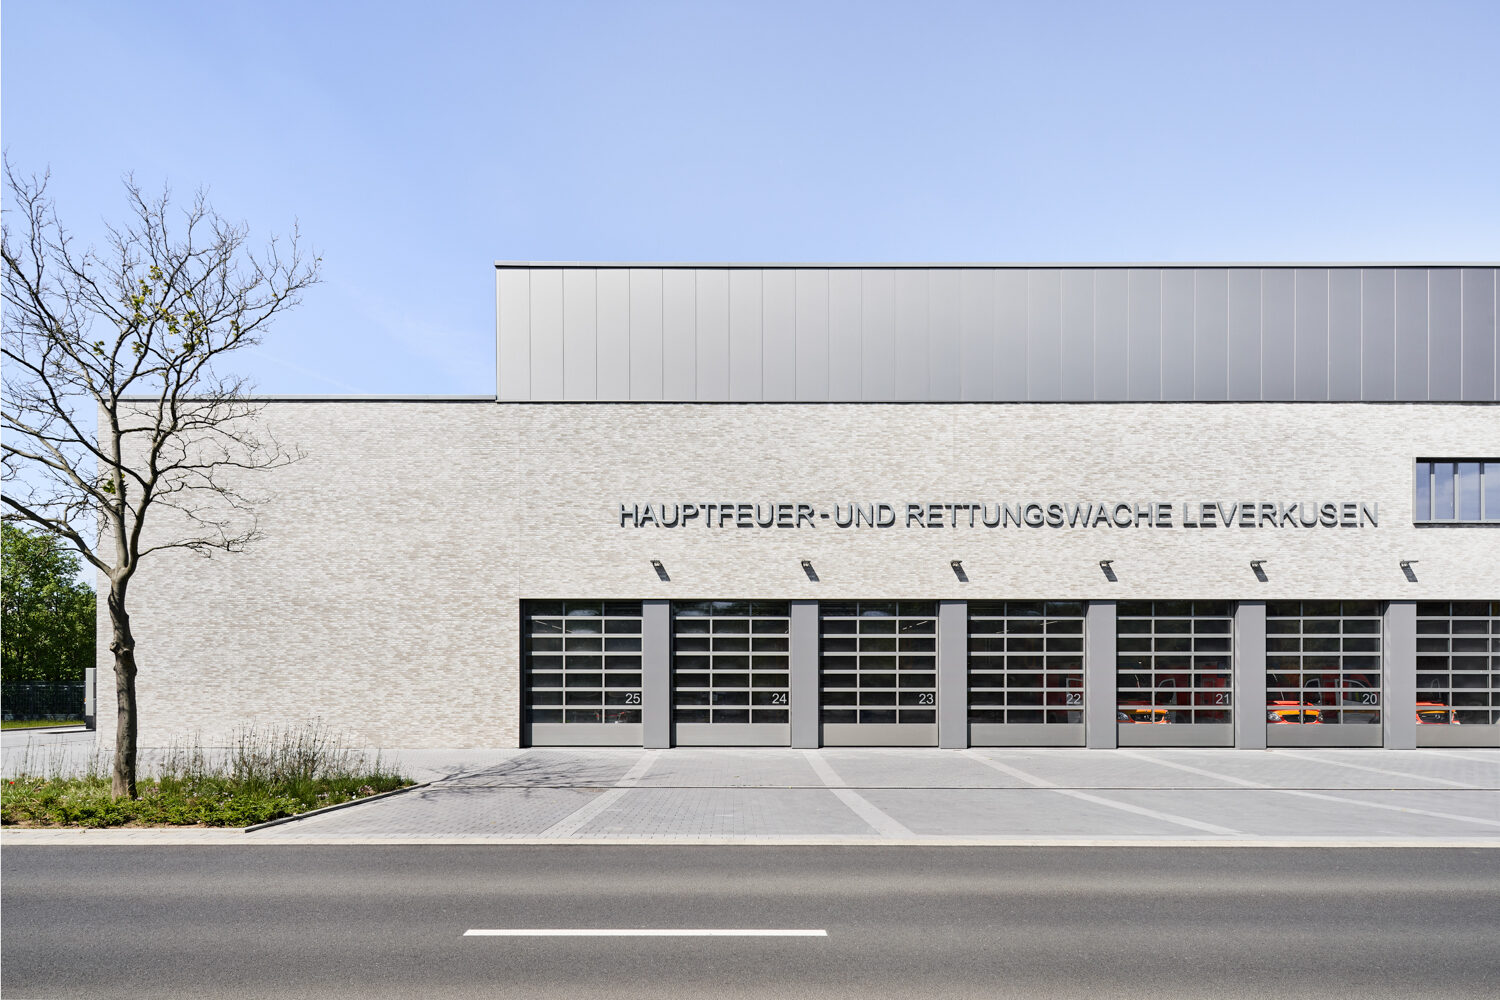 Hauptfeuer- und Rettungswache Leverkusen / ©SUPERGELB ARCHITEKTEN by GATERMANN + SCHOSSIG / Foto Annika Feuss